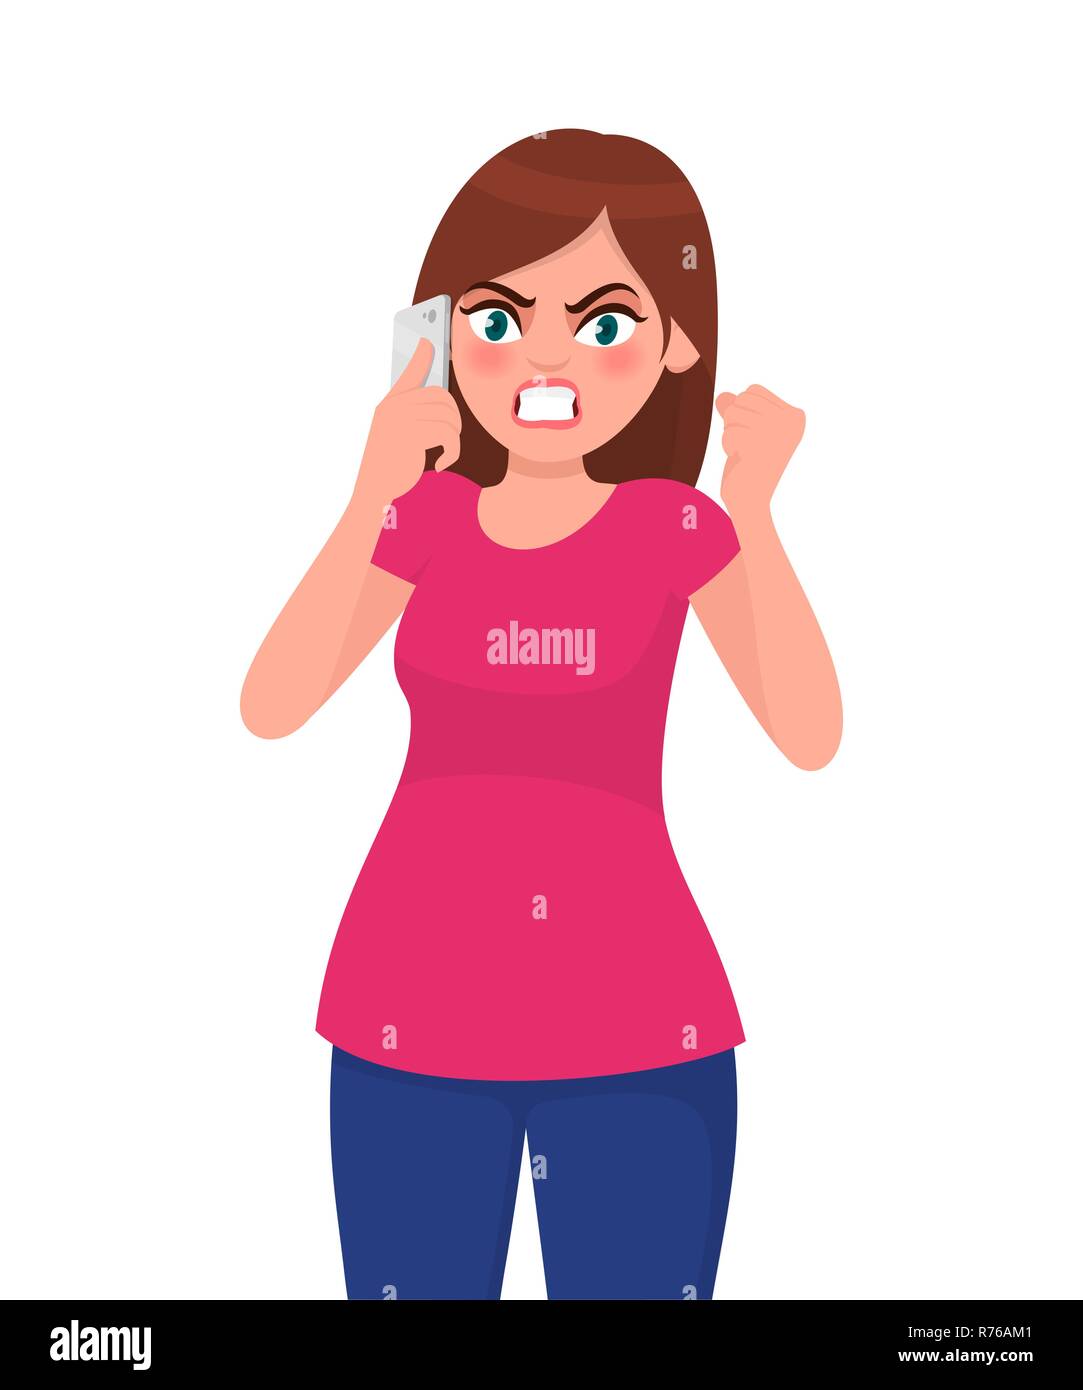 Angry Young Woman auf Smart Phone und Schreien. Moderner Lifestyle und Kommunikation Konzept Abbildung in Vektor cartoon Flat Style. Stock Vektor